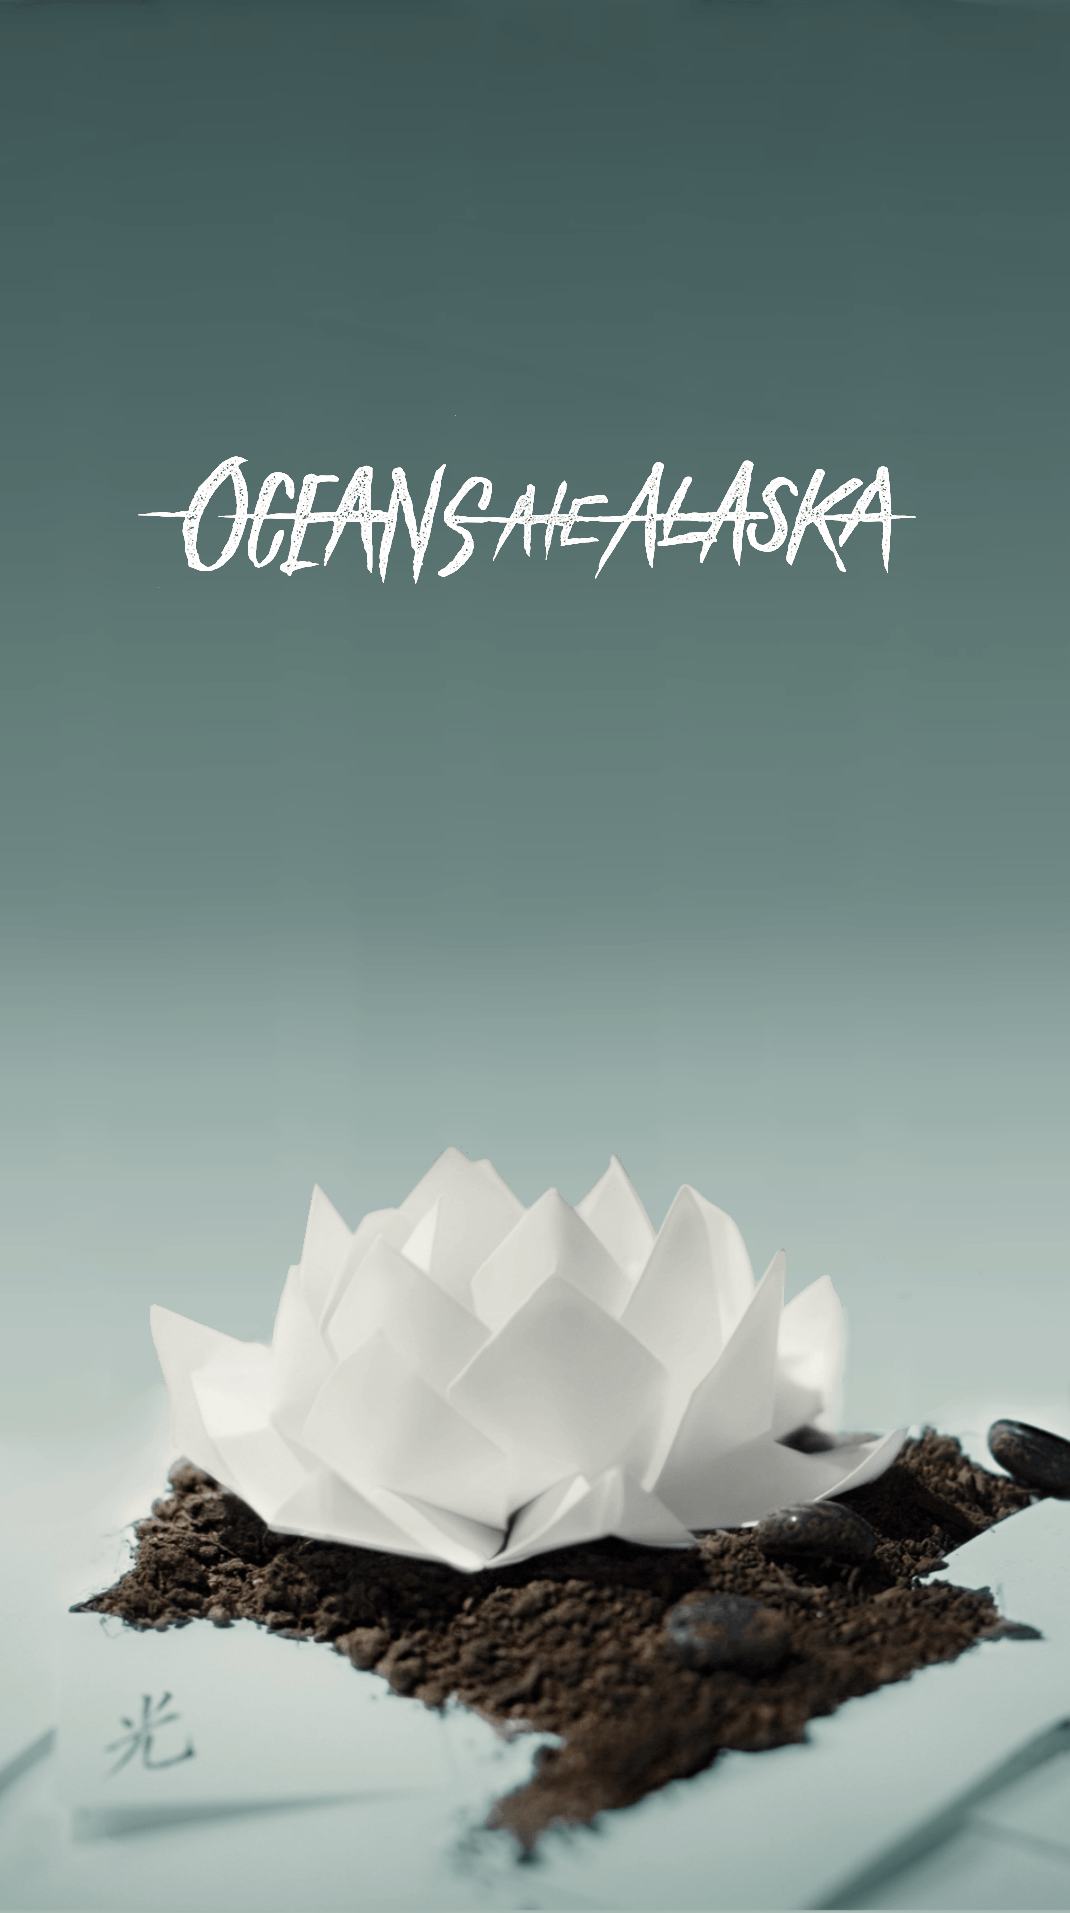 Oceans Ate Alaska Hikari Mobile Wallpaper 1920x1080. music